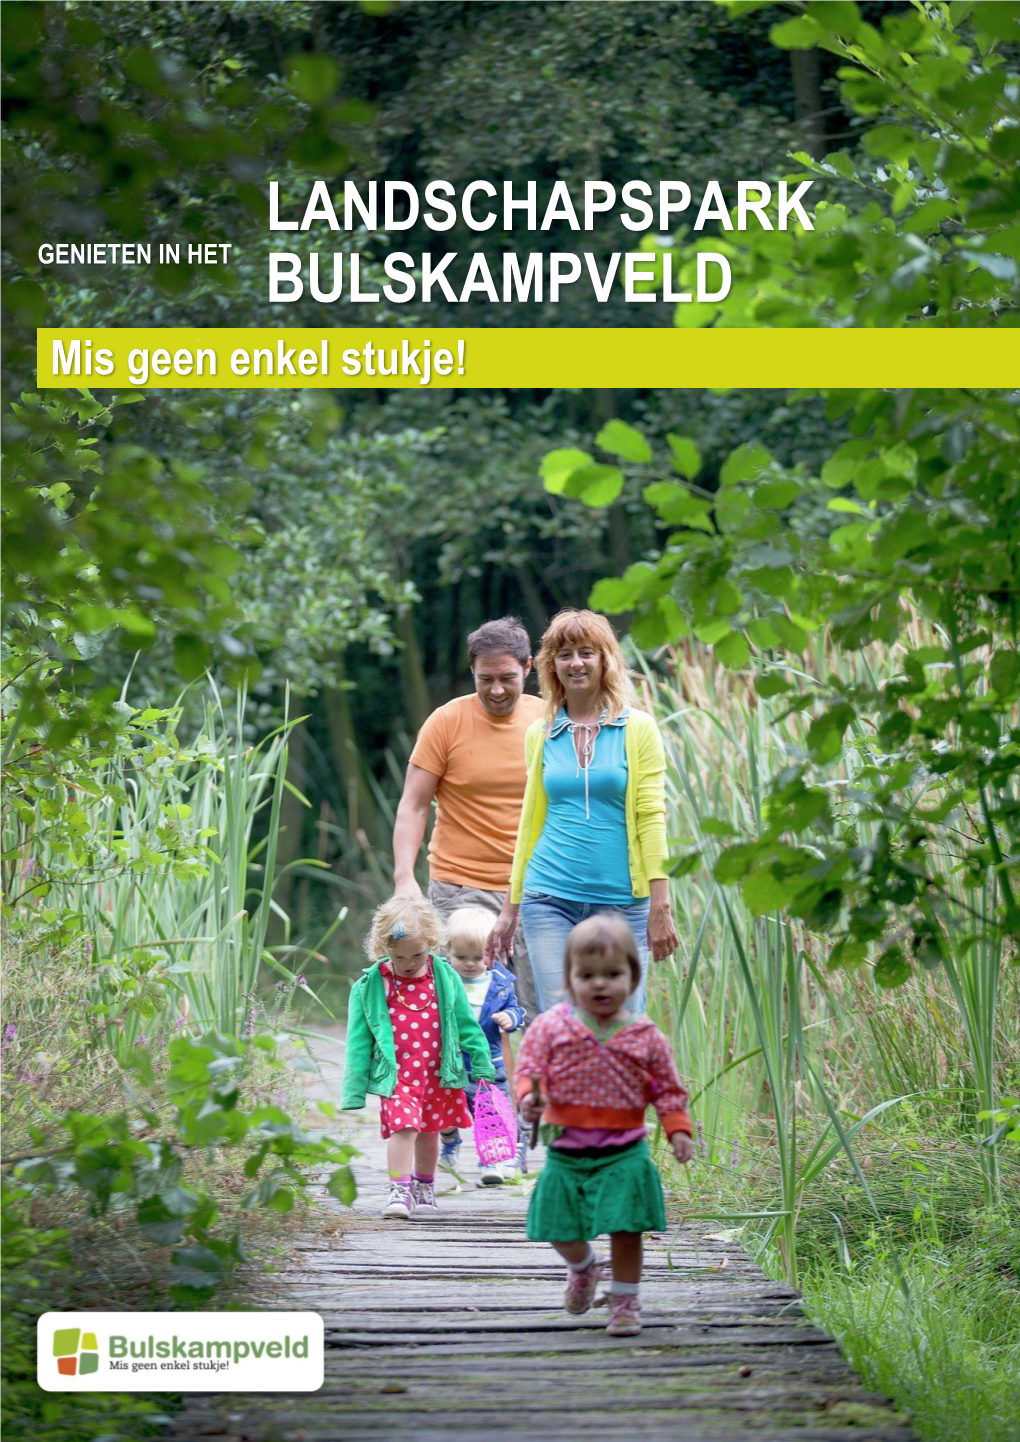 Landschapspark Bulskampveld Is Het Grootste Aaneengesloten Groengebied Van West- En Oost- Vlaanderen